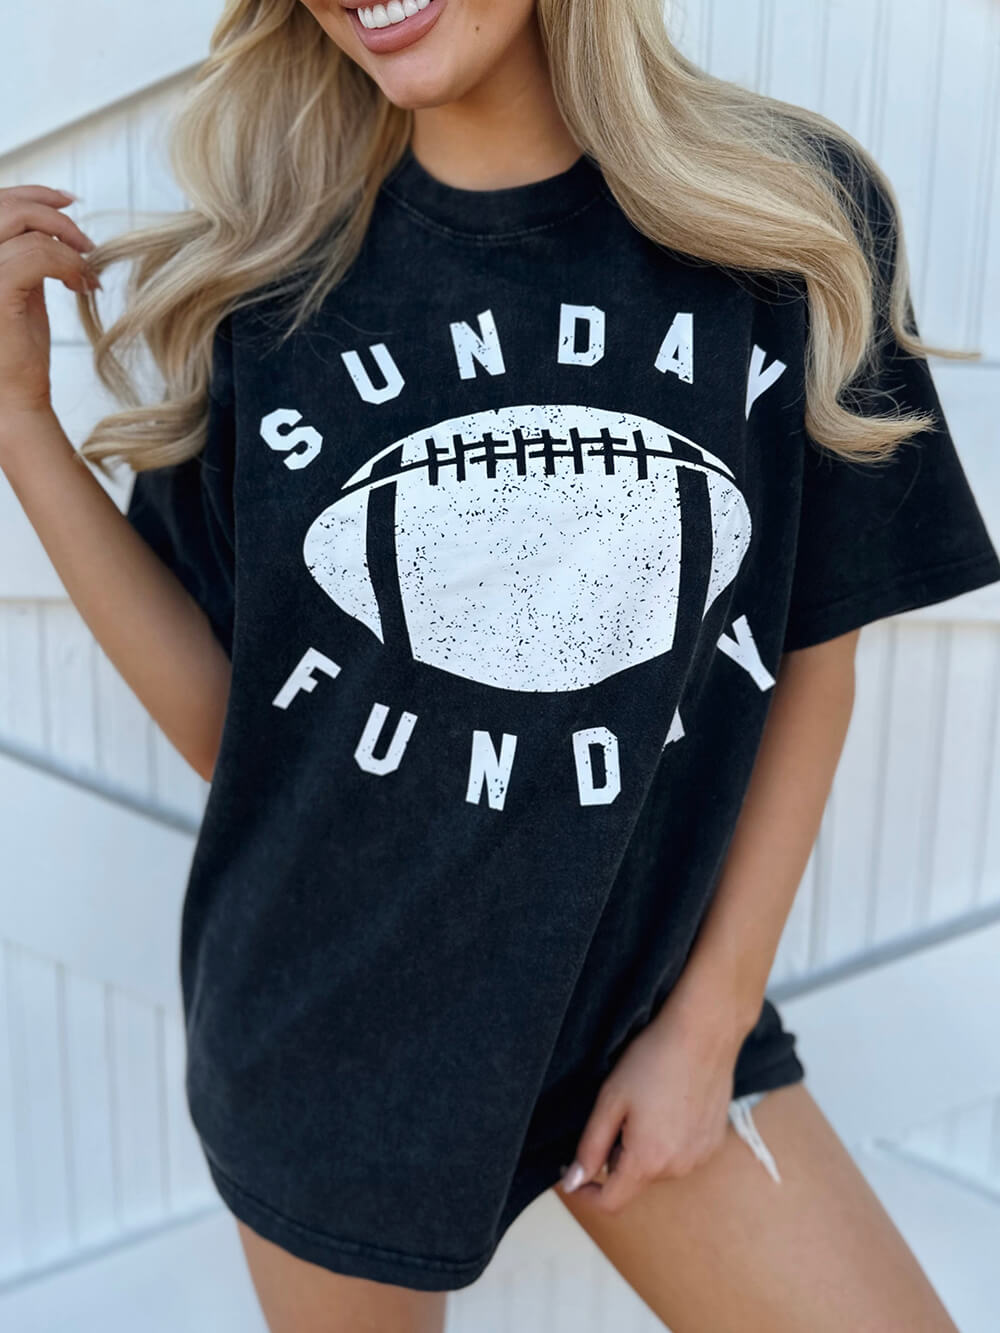 Grafické tričko s minerálním praním "Sunday Funday".